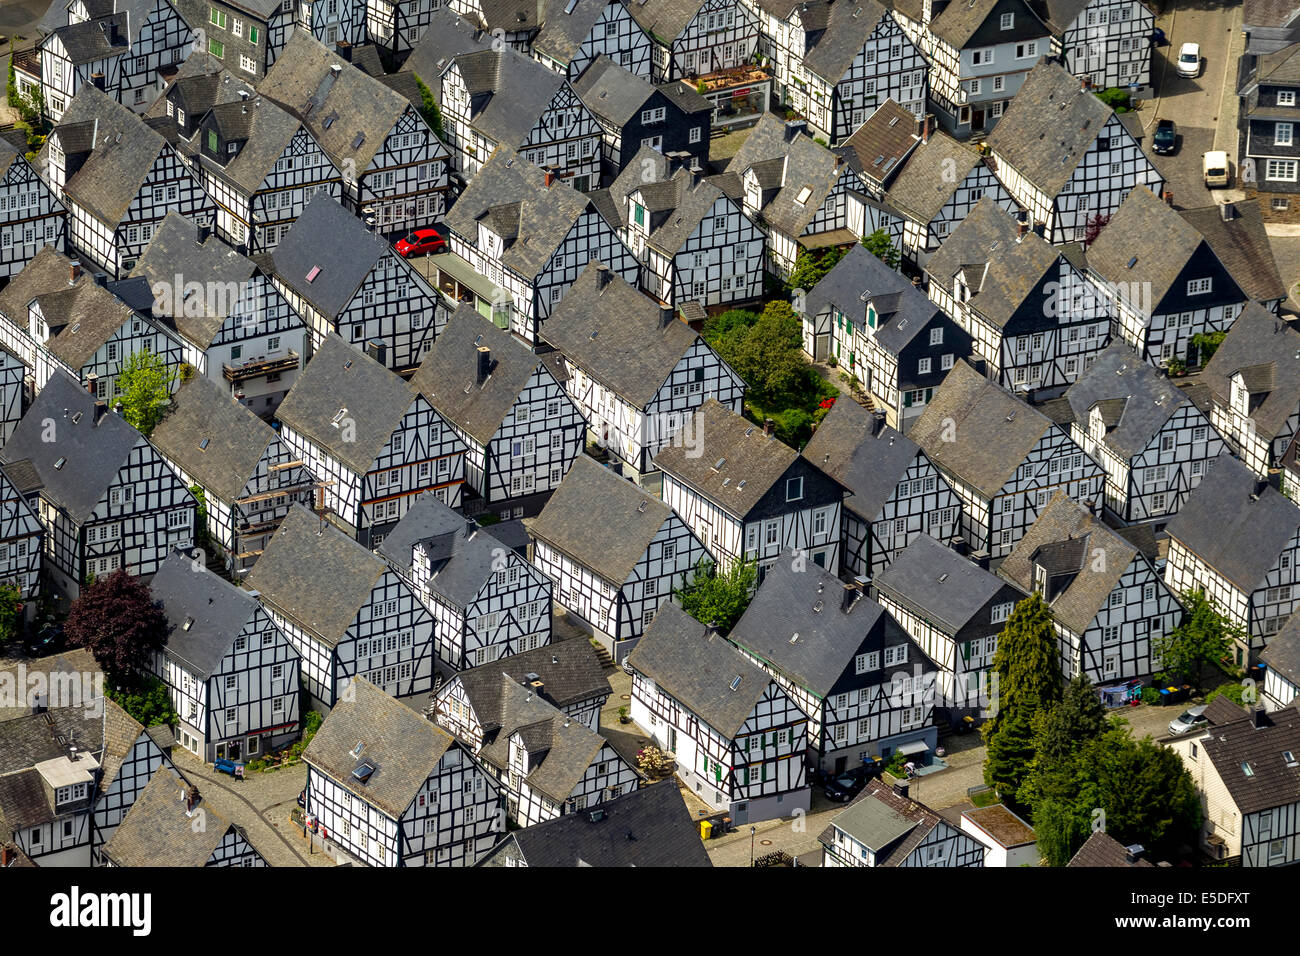 Vista aérea, casas con entramados de madera, las manchas de la edad, el núcleo histórico de la ciudad, Freudenberg, Renania del Norte-Westfalia, Alemania Foto de stock